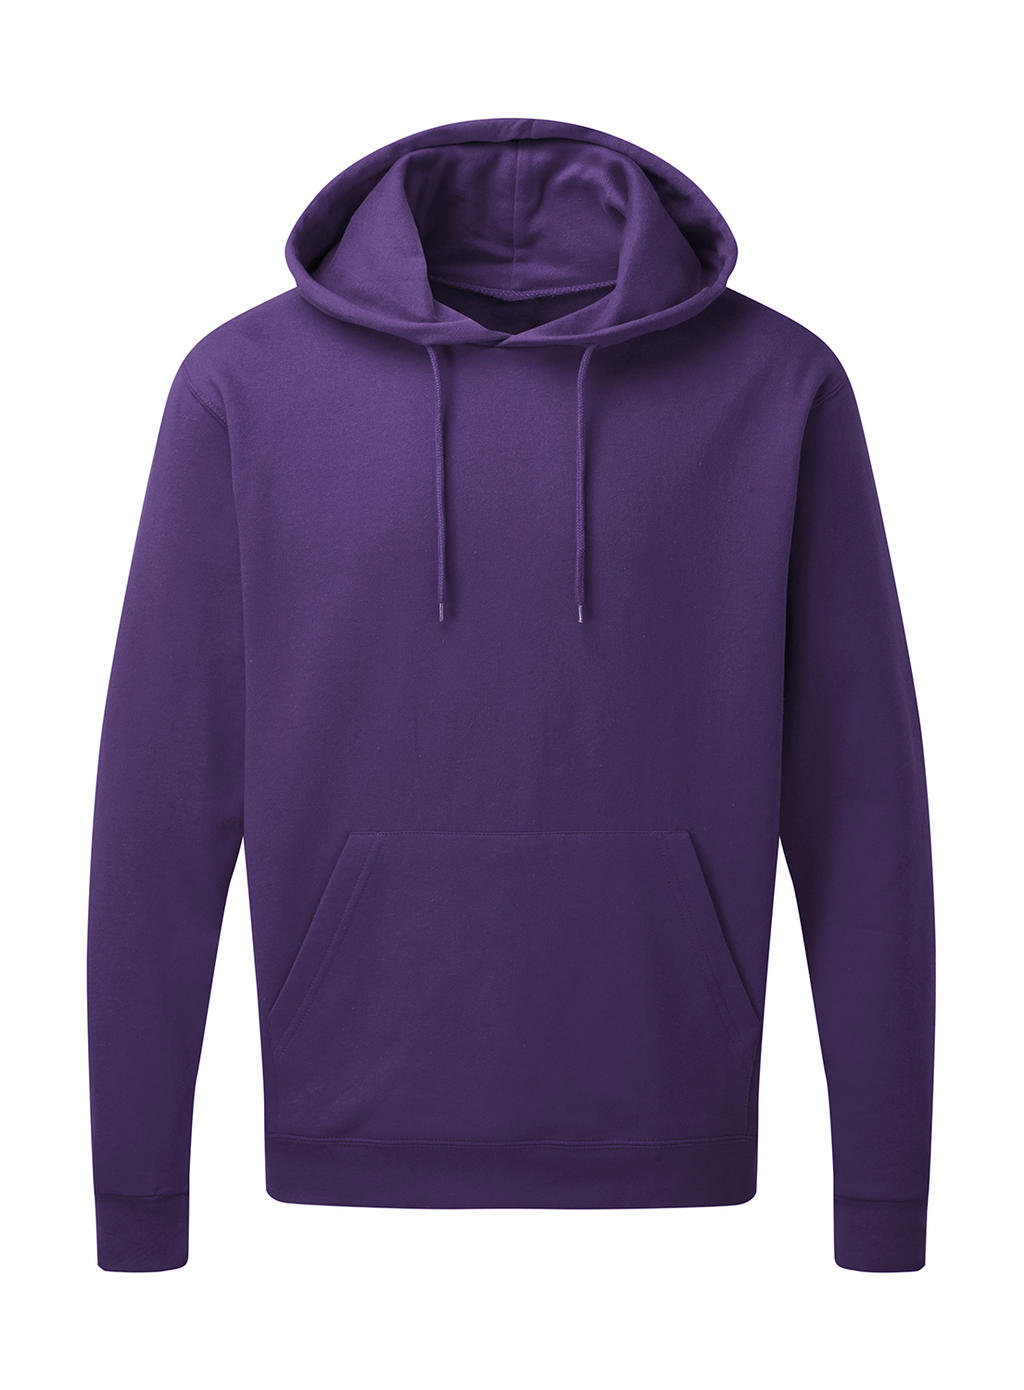  Mens Hooded Sweatshirt in Farbe Purple